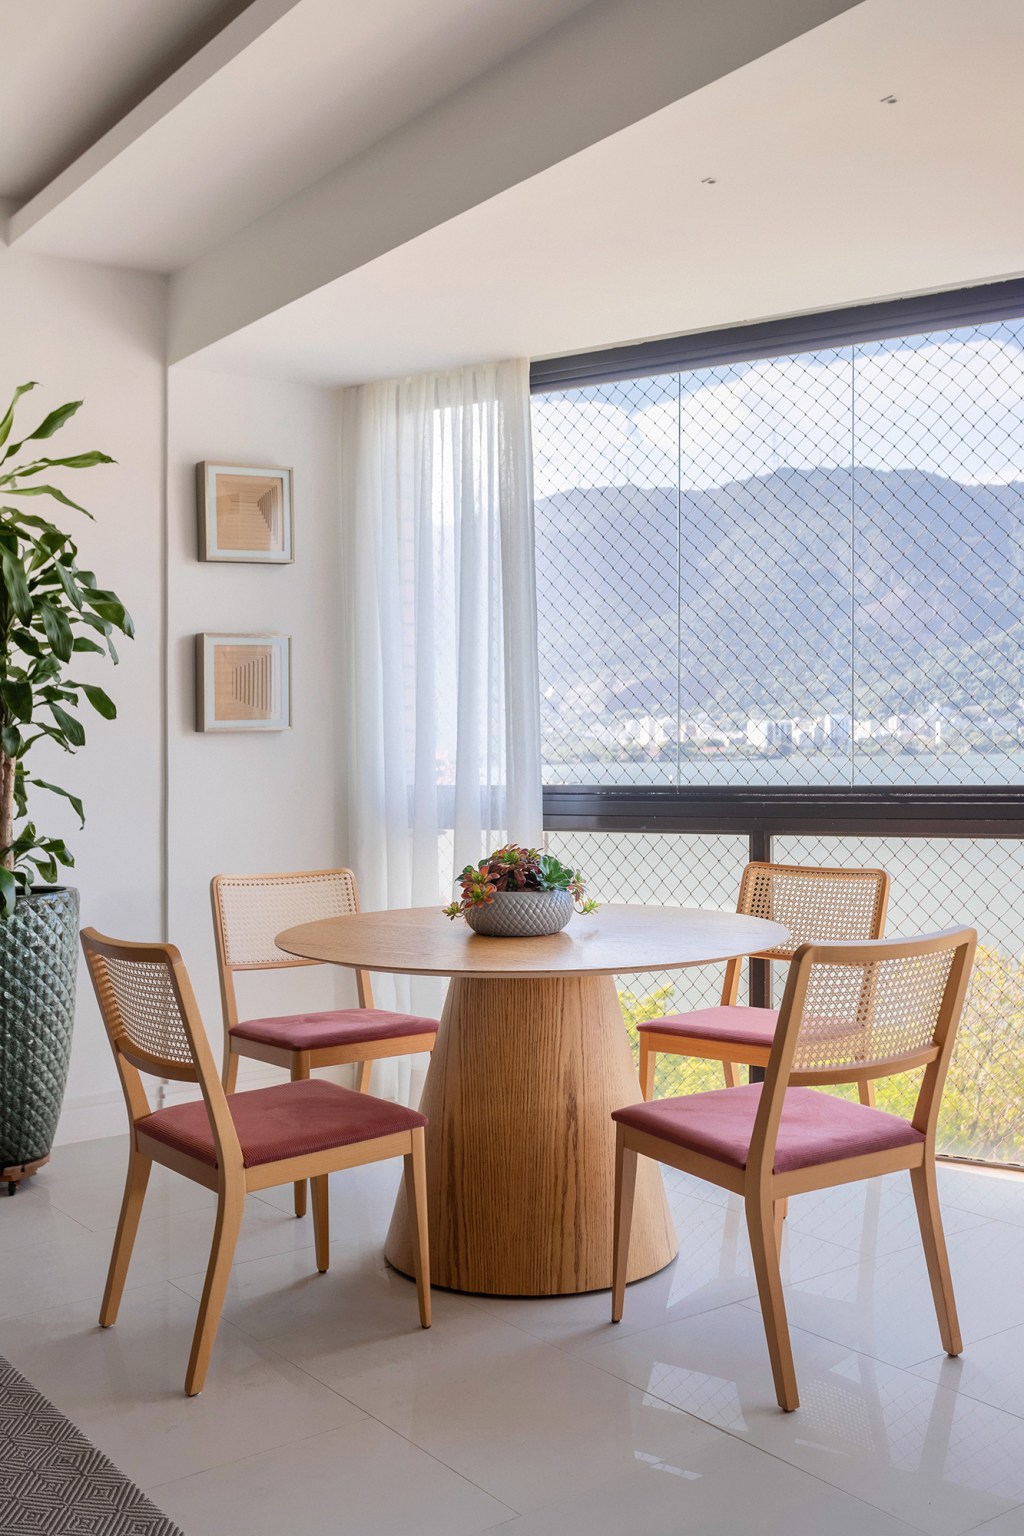 Cores vivas marcam décor deste apartamento de 300 m² com pé-direito duplo. Projeto de Ana Cano. Na foto, sala de almoço com vista para a natureza.